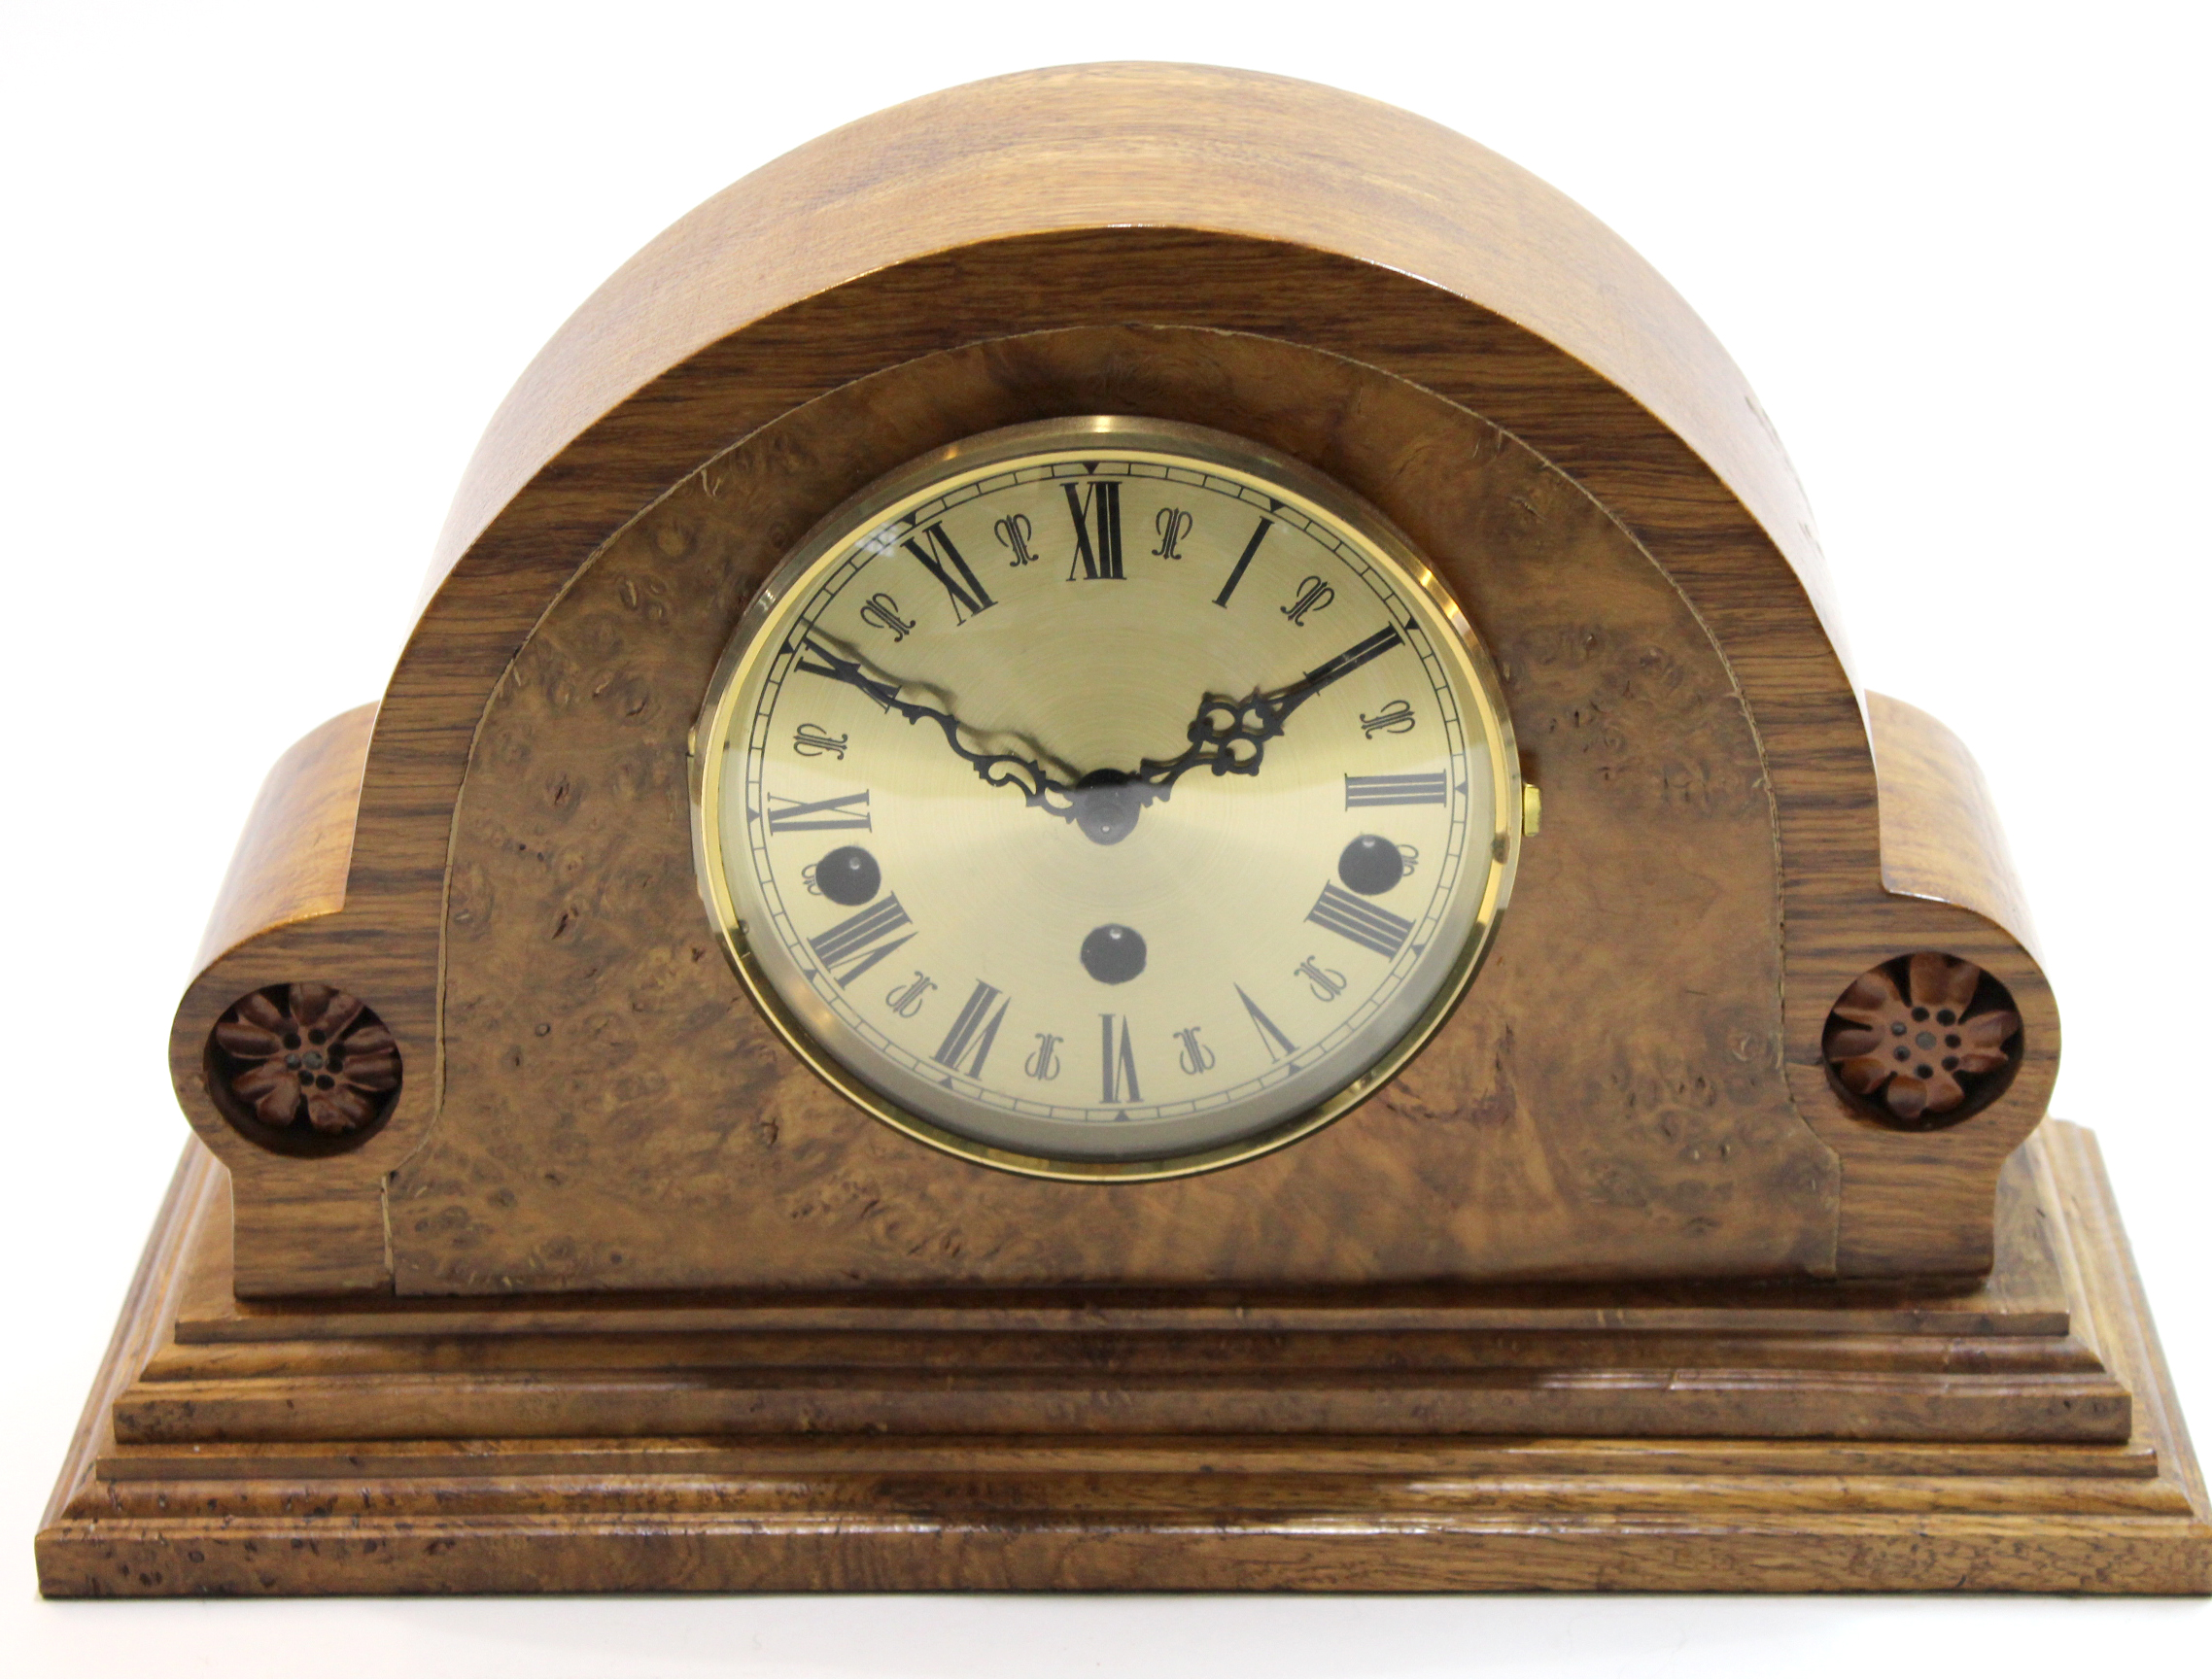 Modern mantel clock in shaped figured walnut case, 33cm long